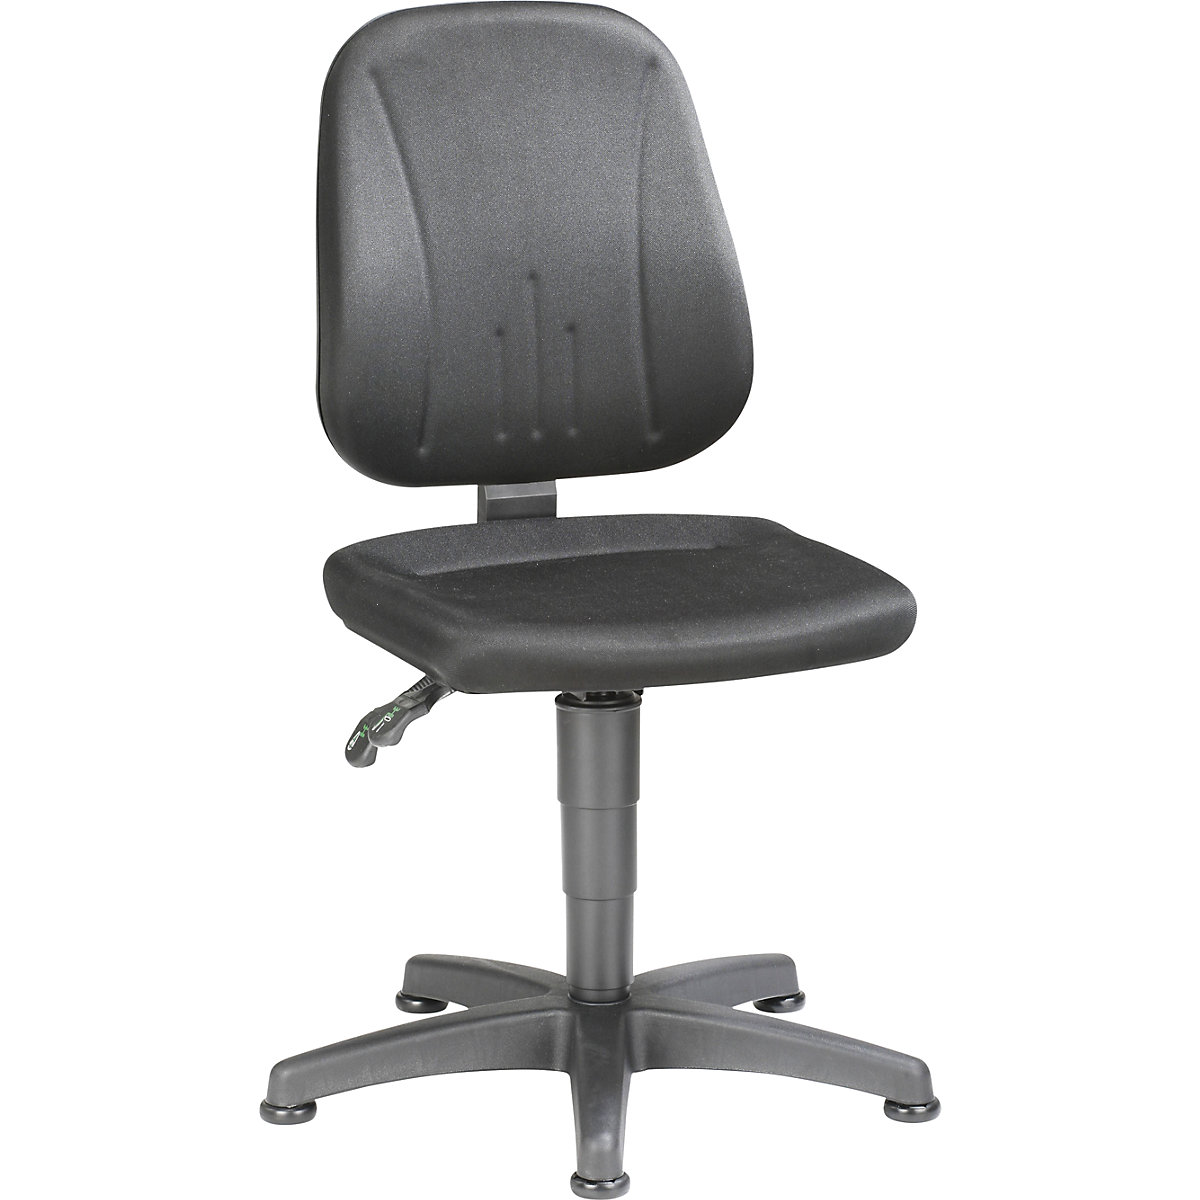 Pracovní otočná židle – bimos, s přestavováním výšky plynovým pístem, látkový potah, černá, s podlahovými patkami-13